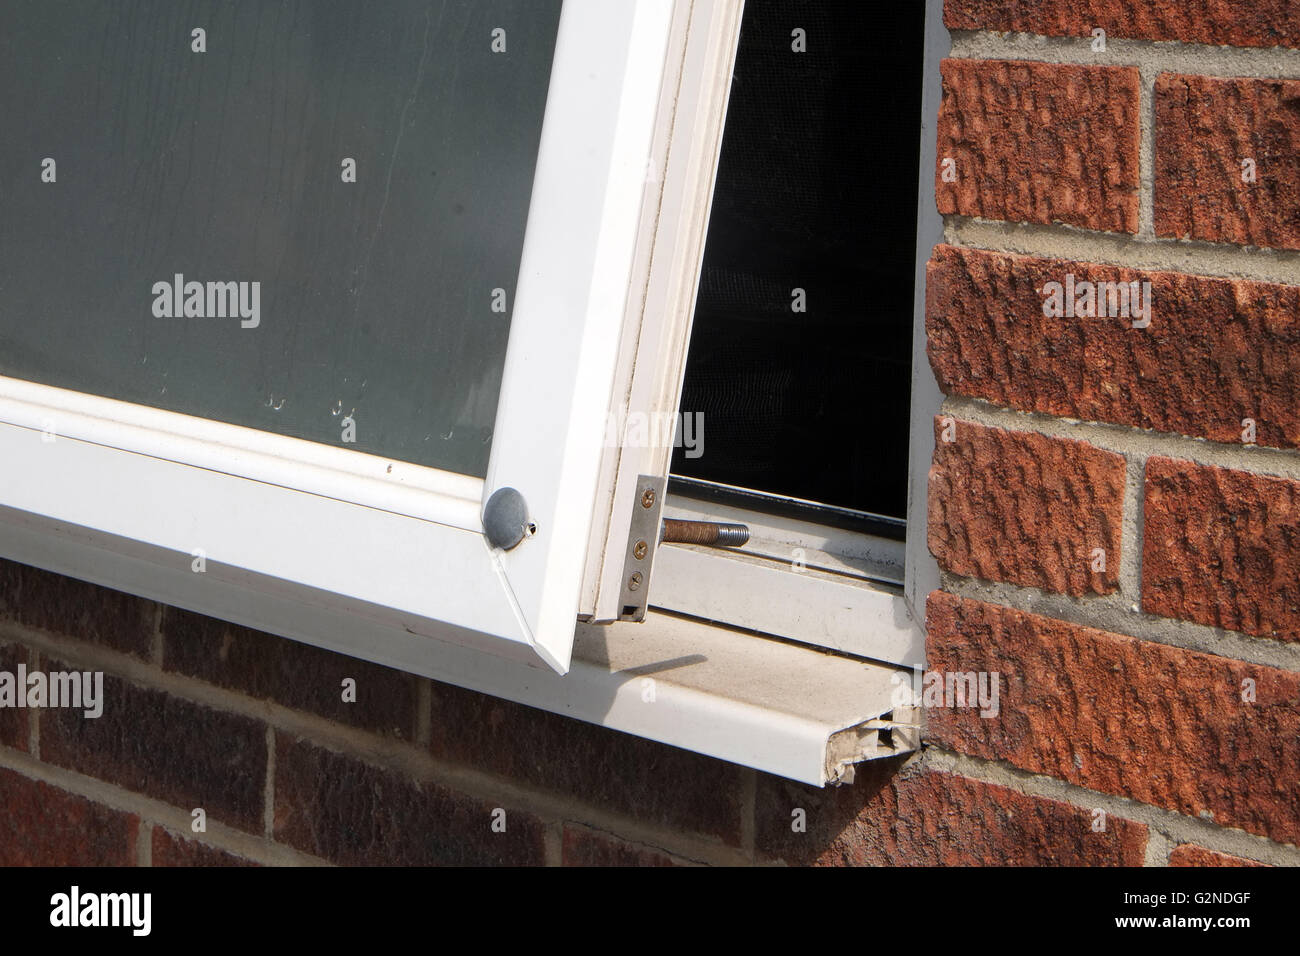 Große grob gebohrt Schraube durch ein uPVC doppelt verglaste Fenster zur Verbesserung der Sicherheit. Mai 2016 Stockfoto